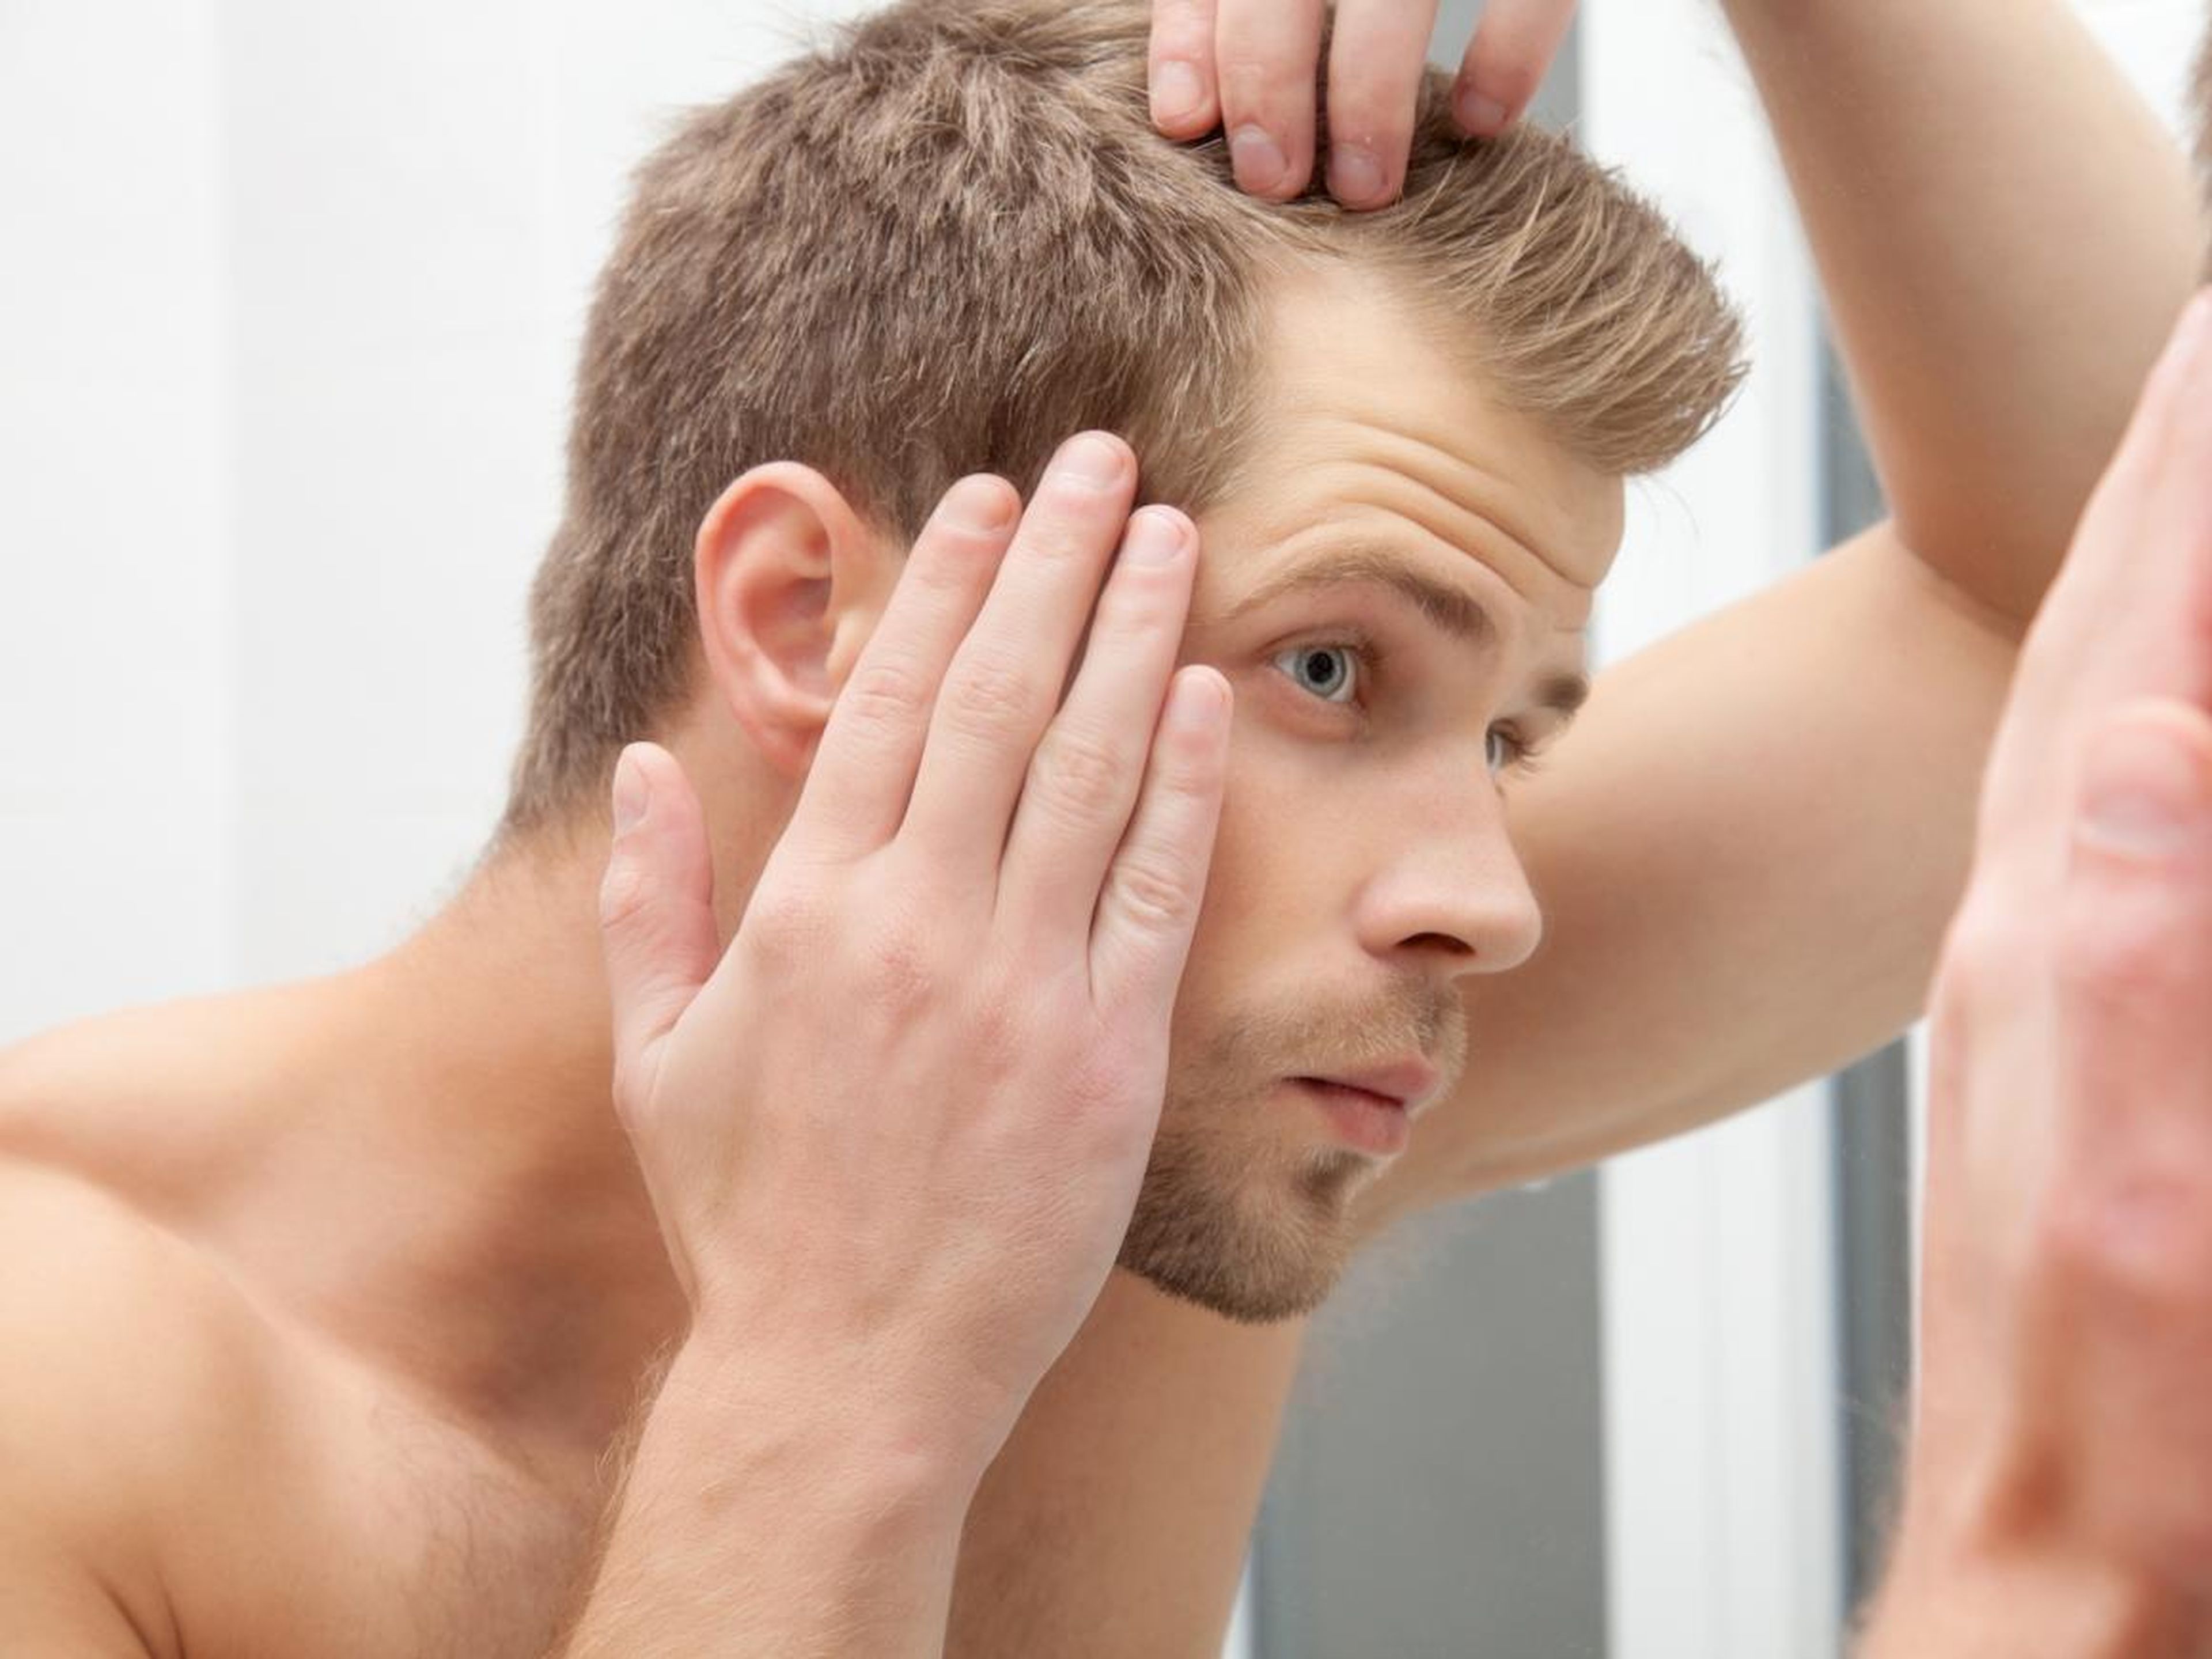 La caída del cabello podría ser síntoma de un problema de salud más grave.